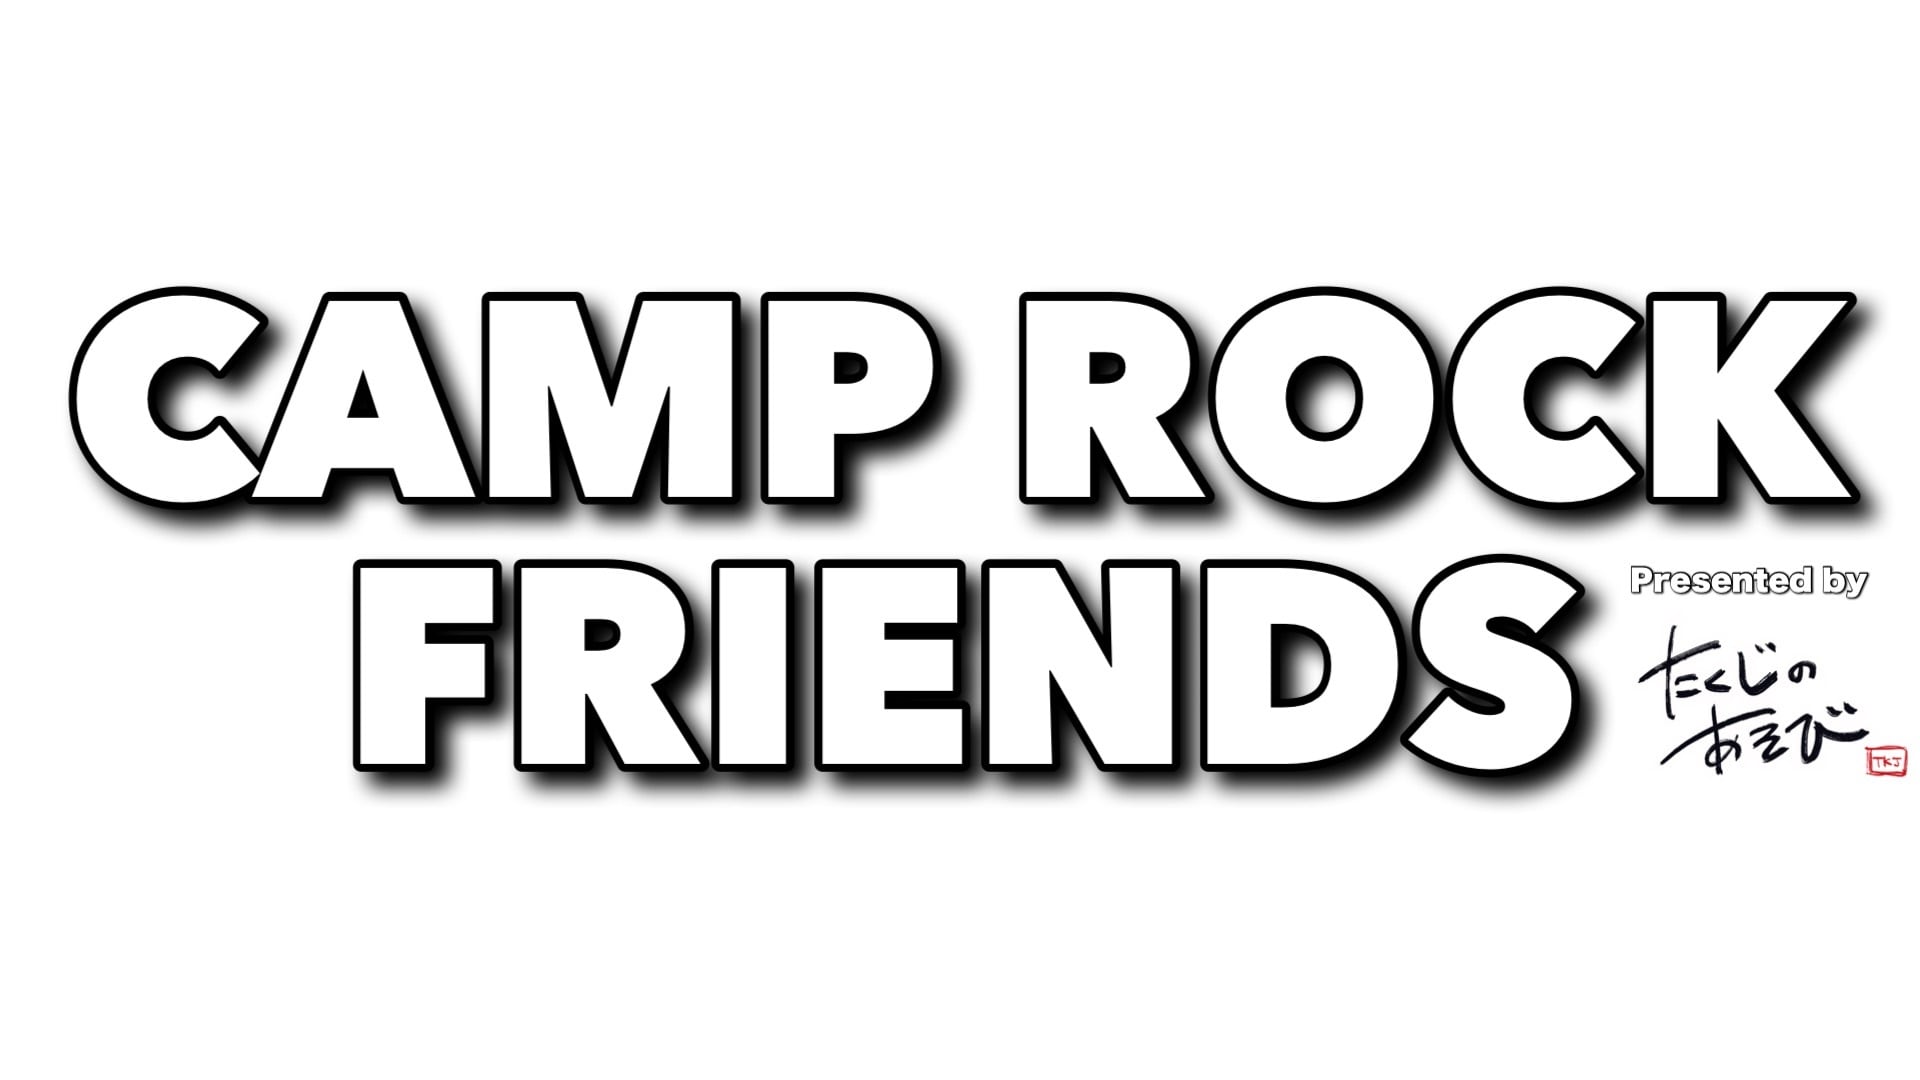 CAMP ROCK FRIENDS